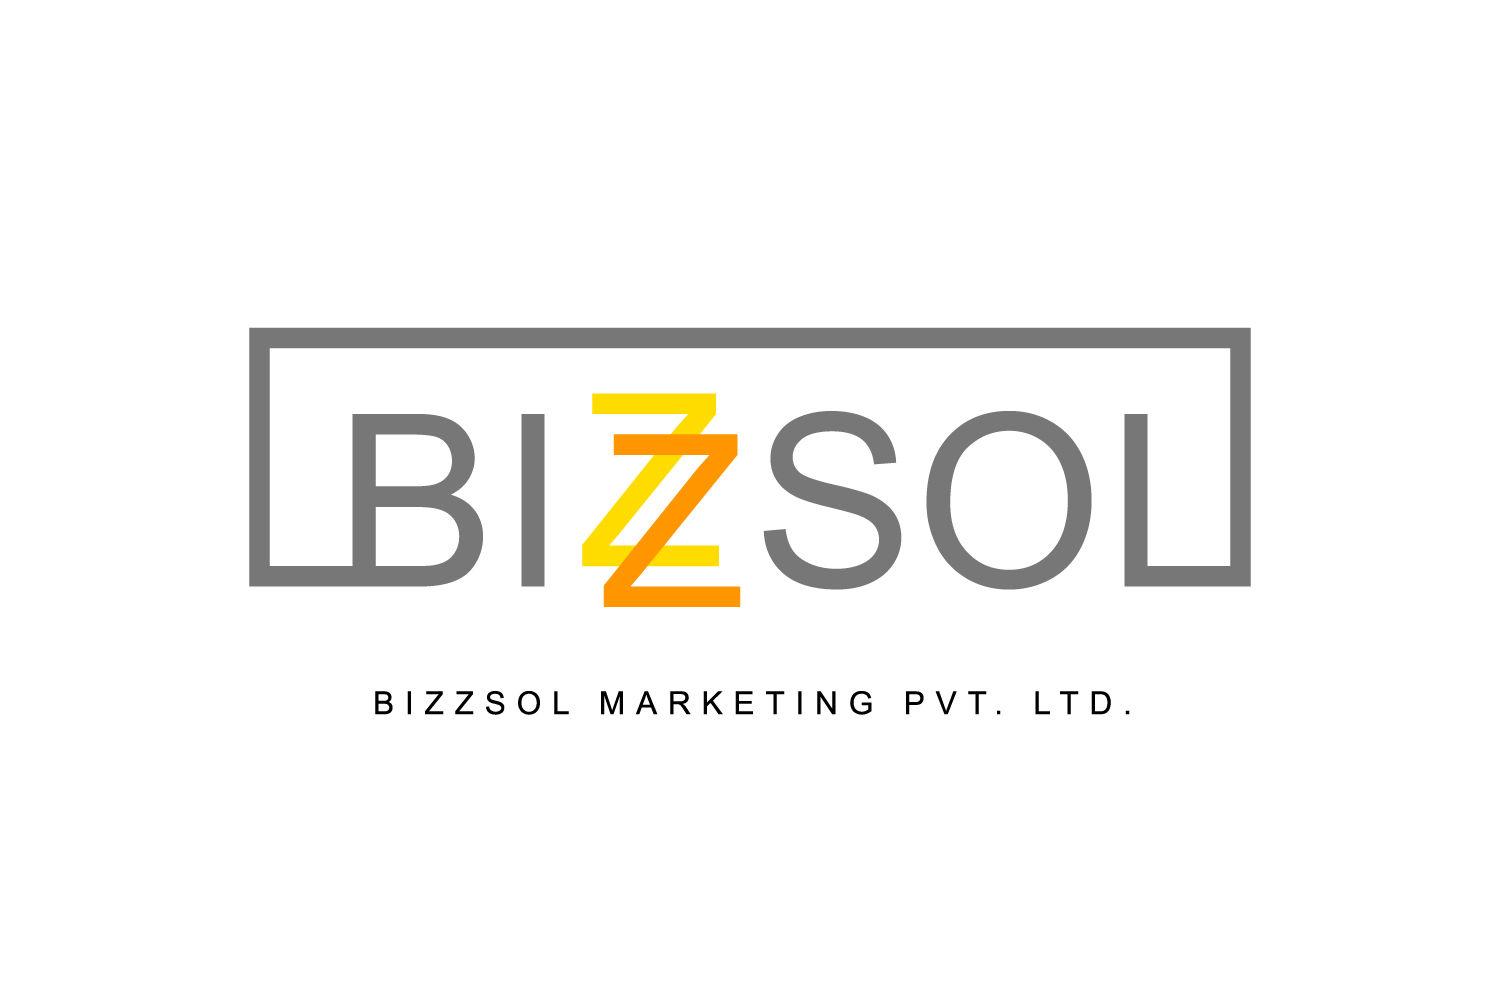 Bizzsol Marketing Pvt. Ltd.